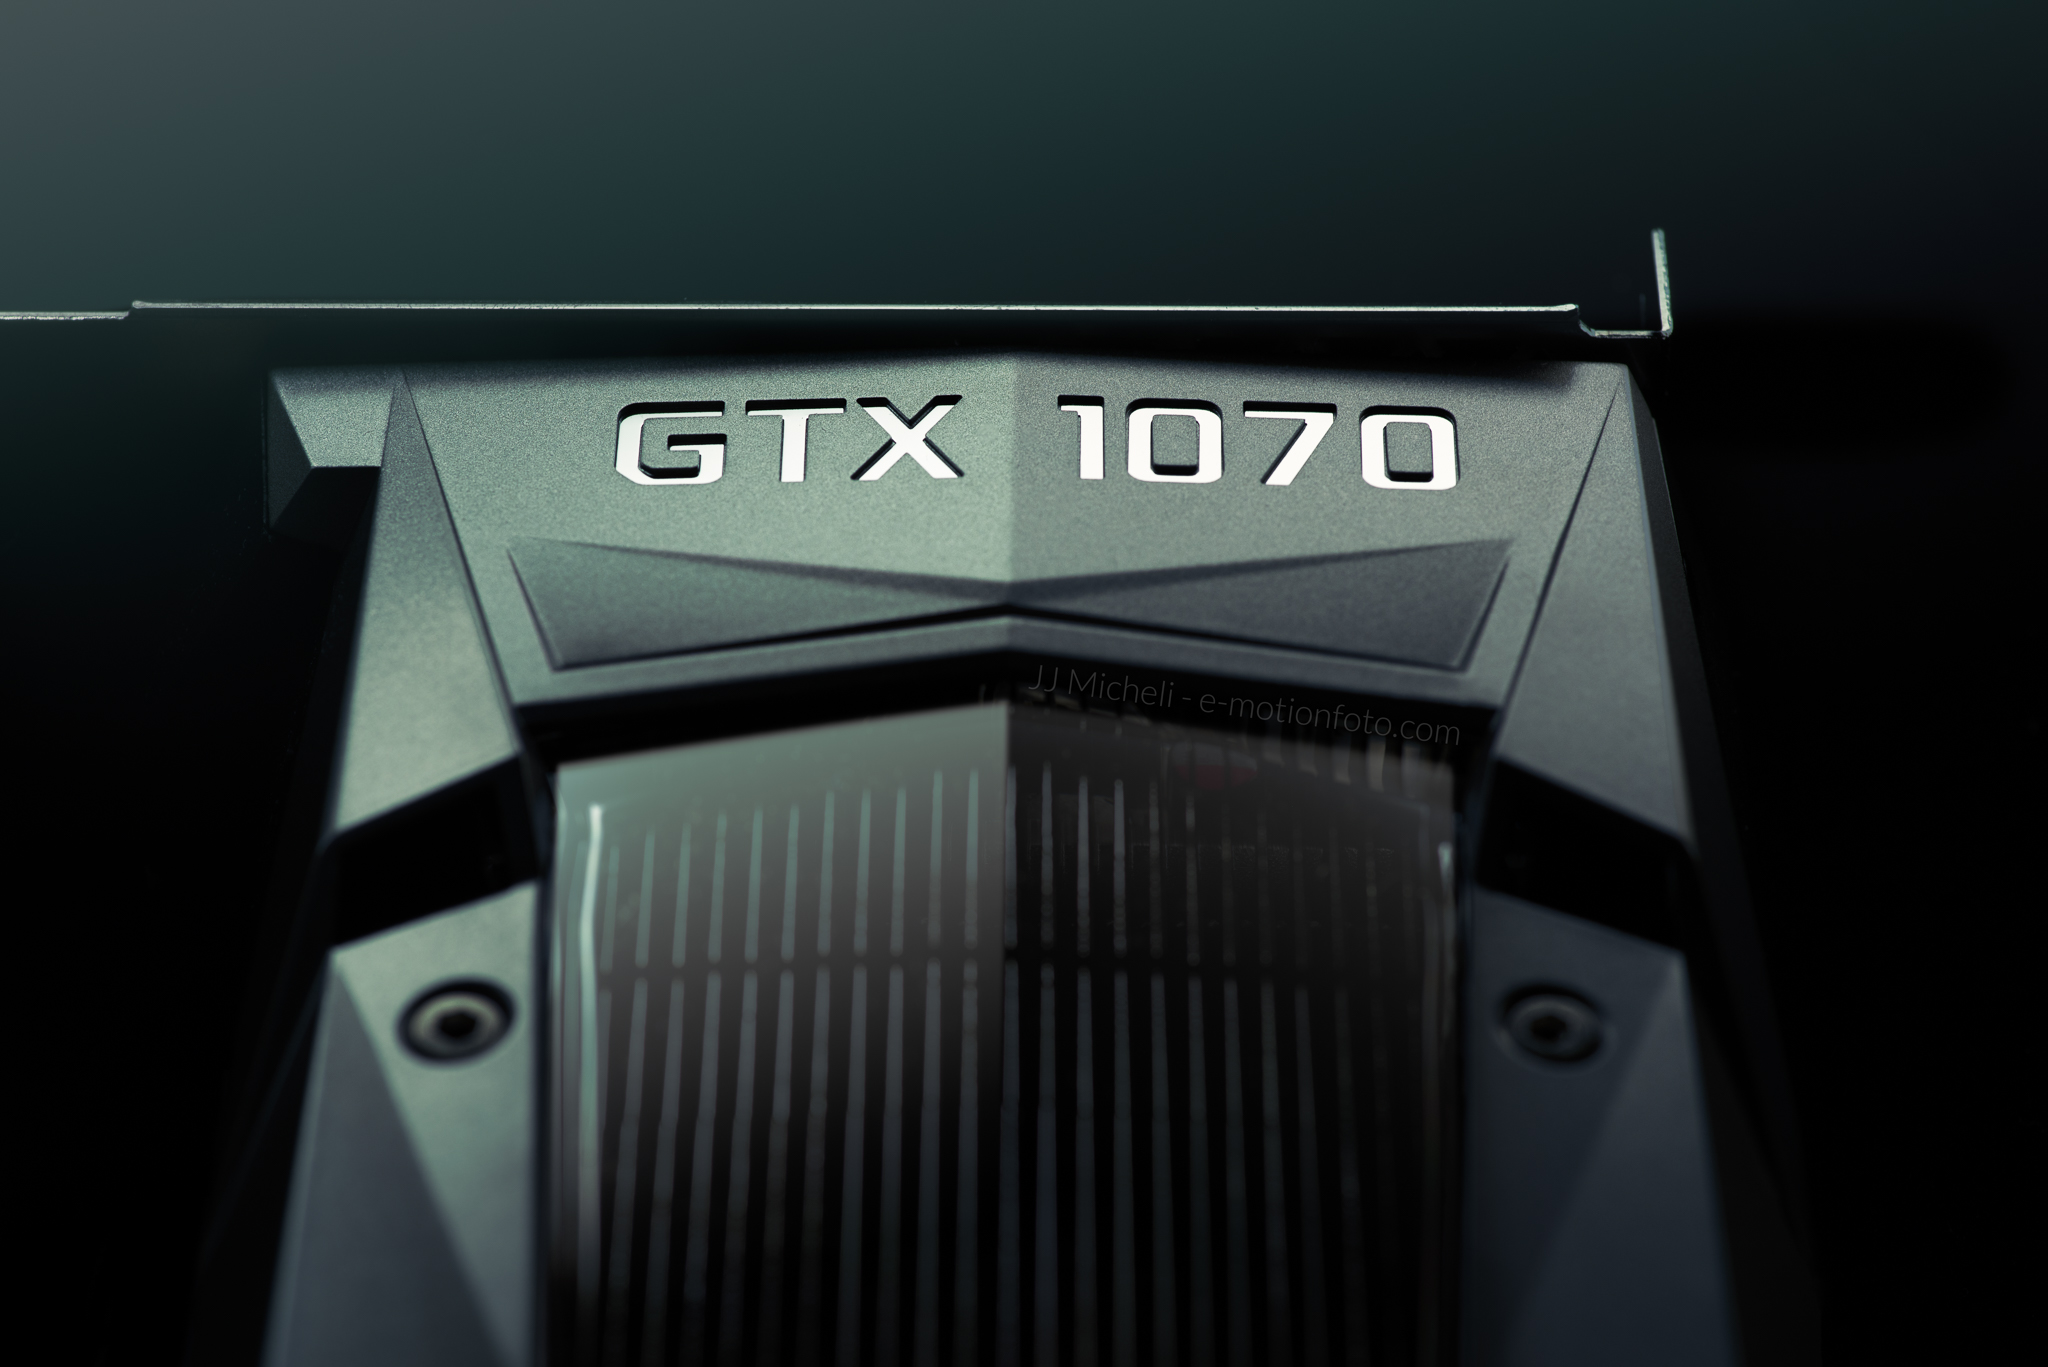 GTX 1070